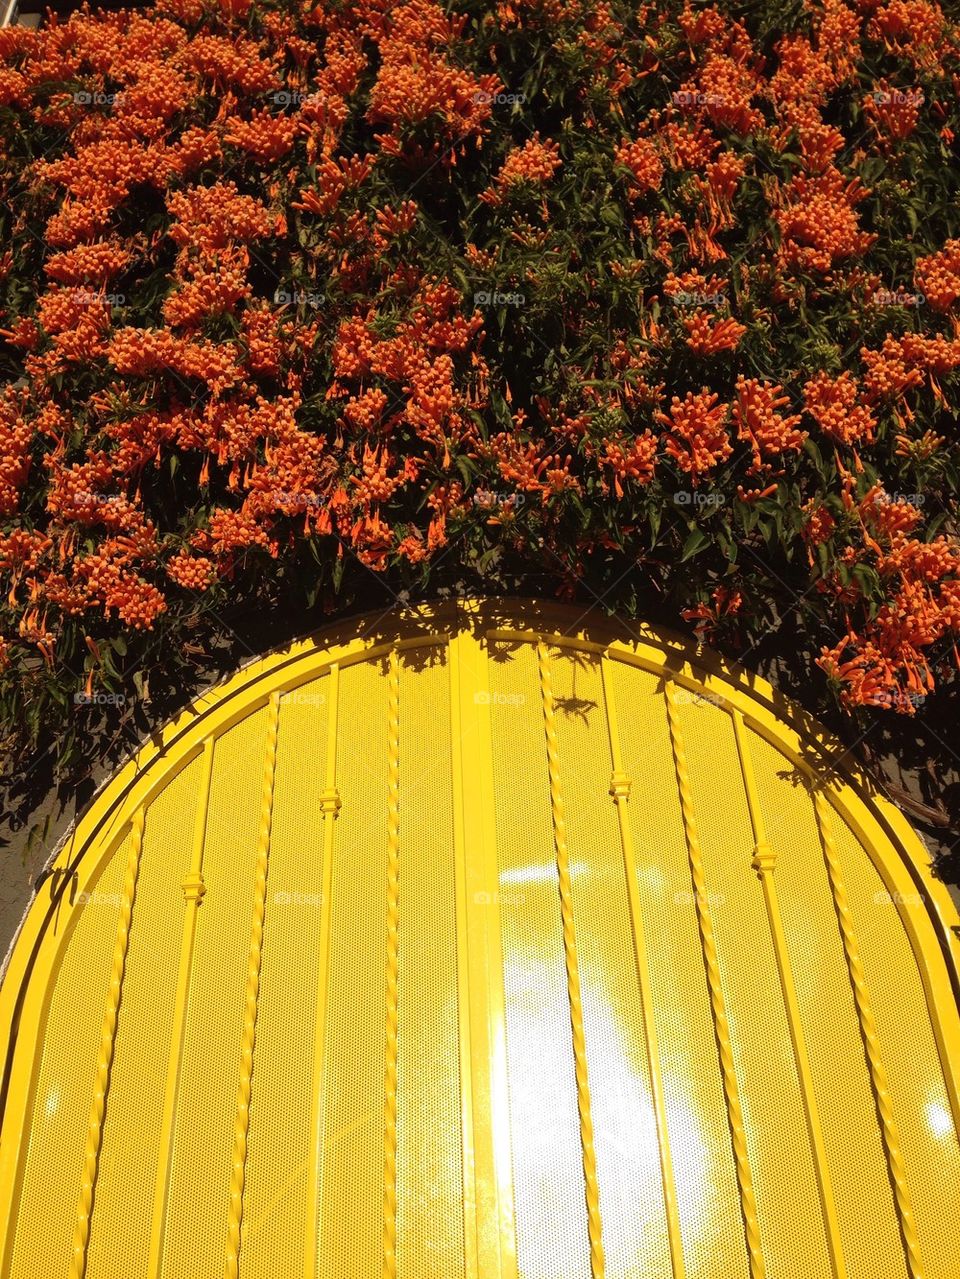 Yellow door, orange flowers, Los angeles